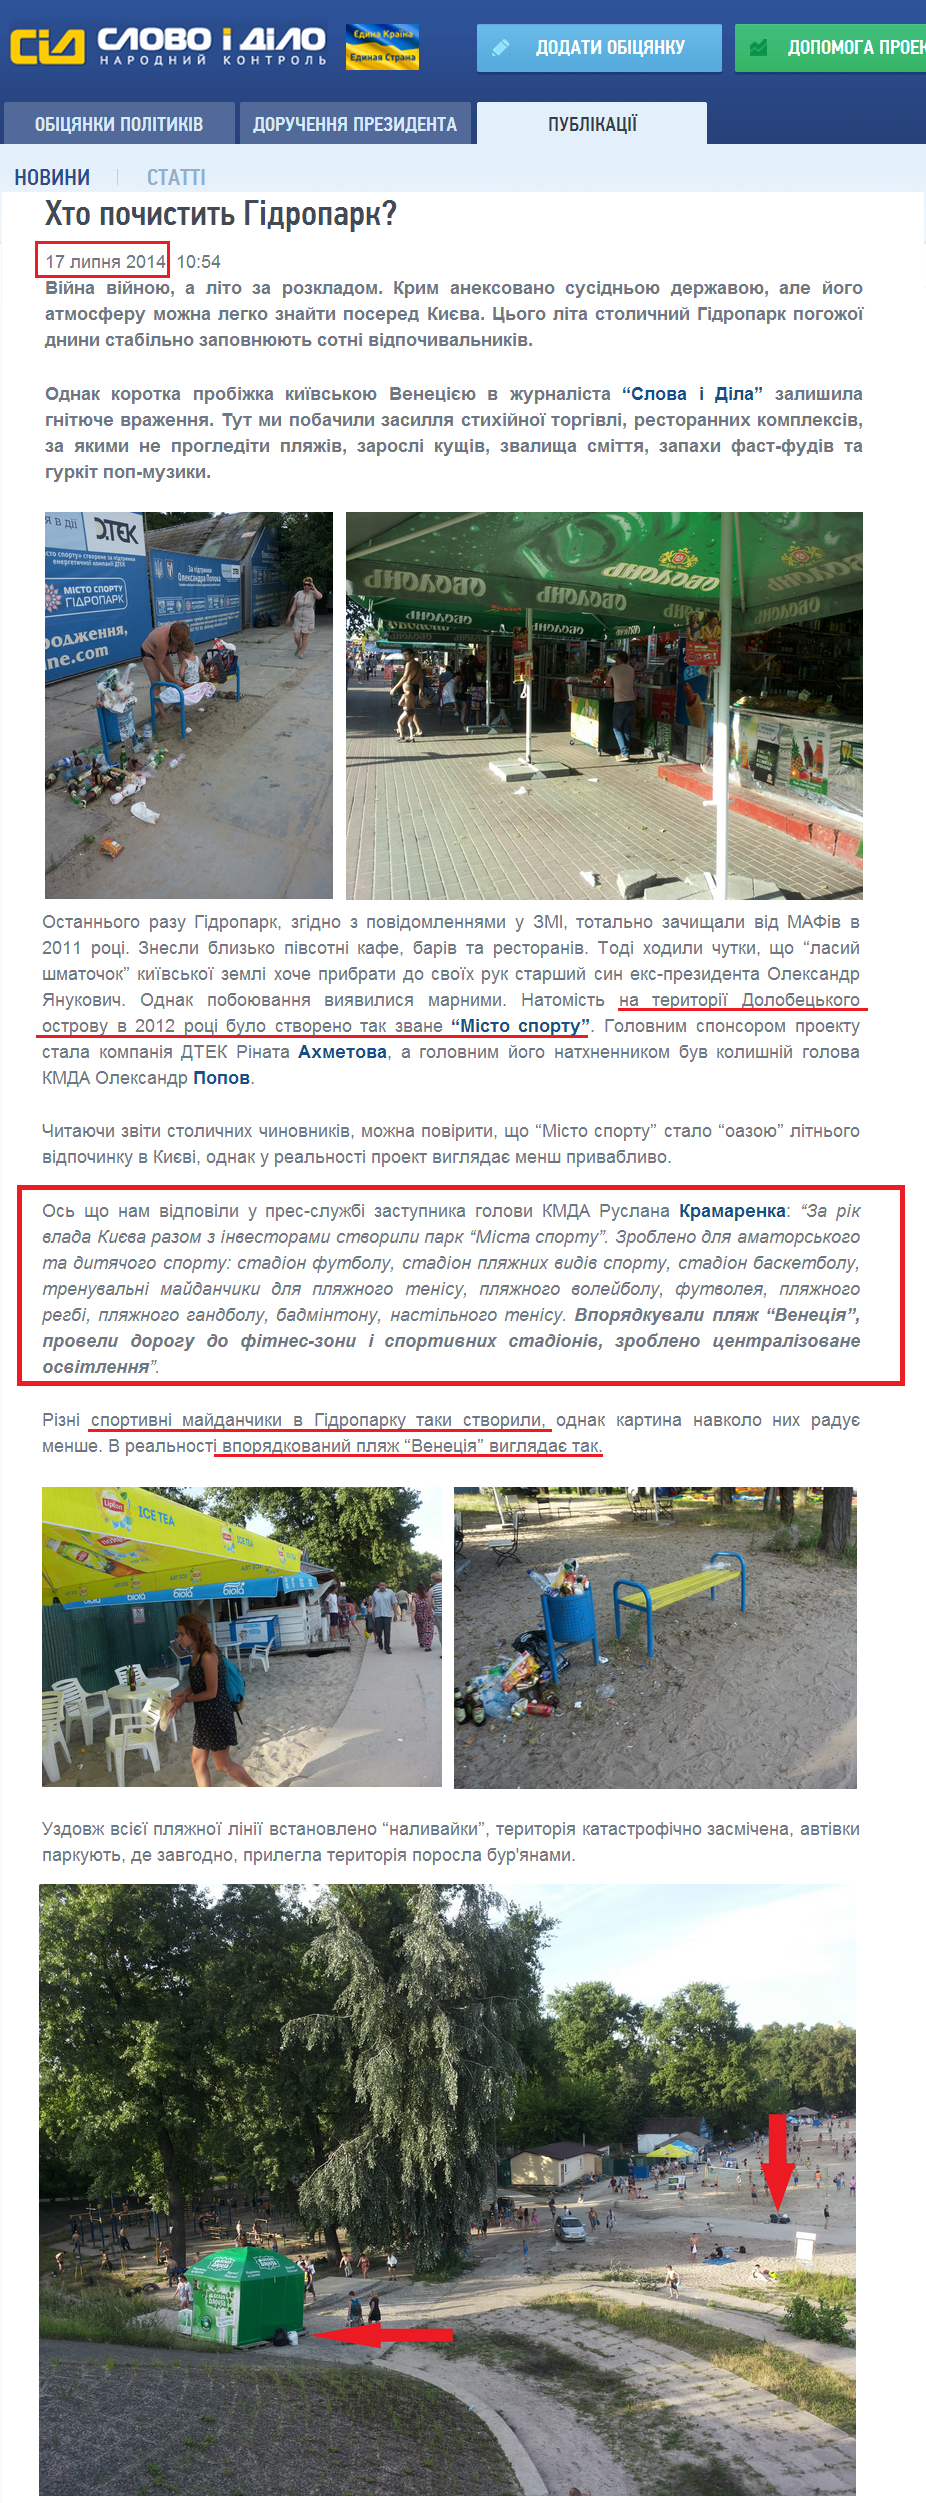 http://www.slovoidilo.ua/articles/3719/2014-07-17/kto-pochistit-gidropark.html